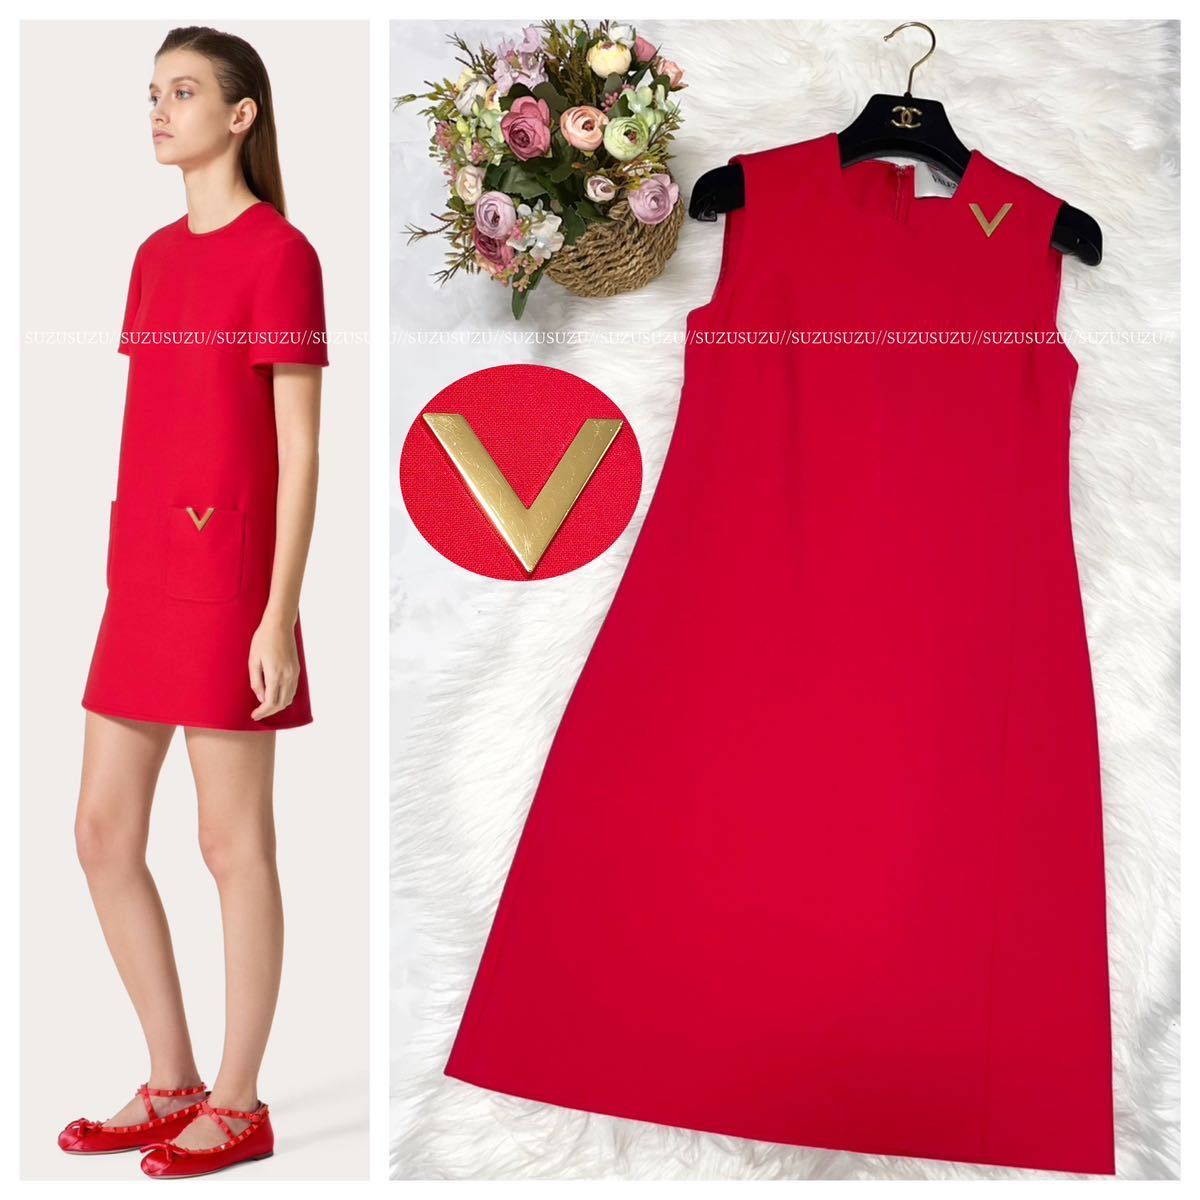 本物 極美品 ヴァレンティノ 最高級ライン Vロゴ 装飾 ノースリーブ ワンピース ドレス 40 レッド 赤 VALENTINO ヴァレンチノ バレンチノ